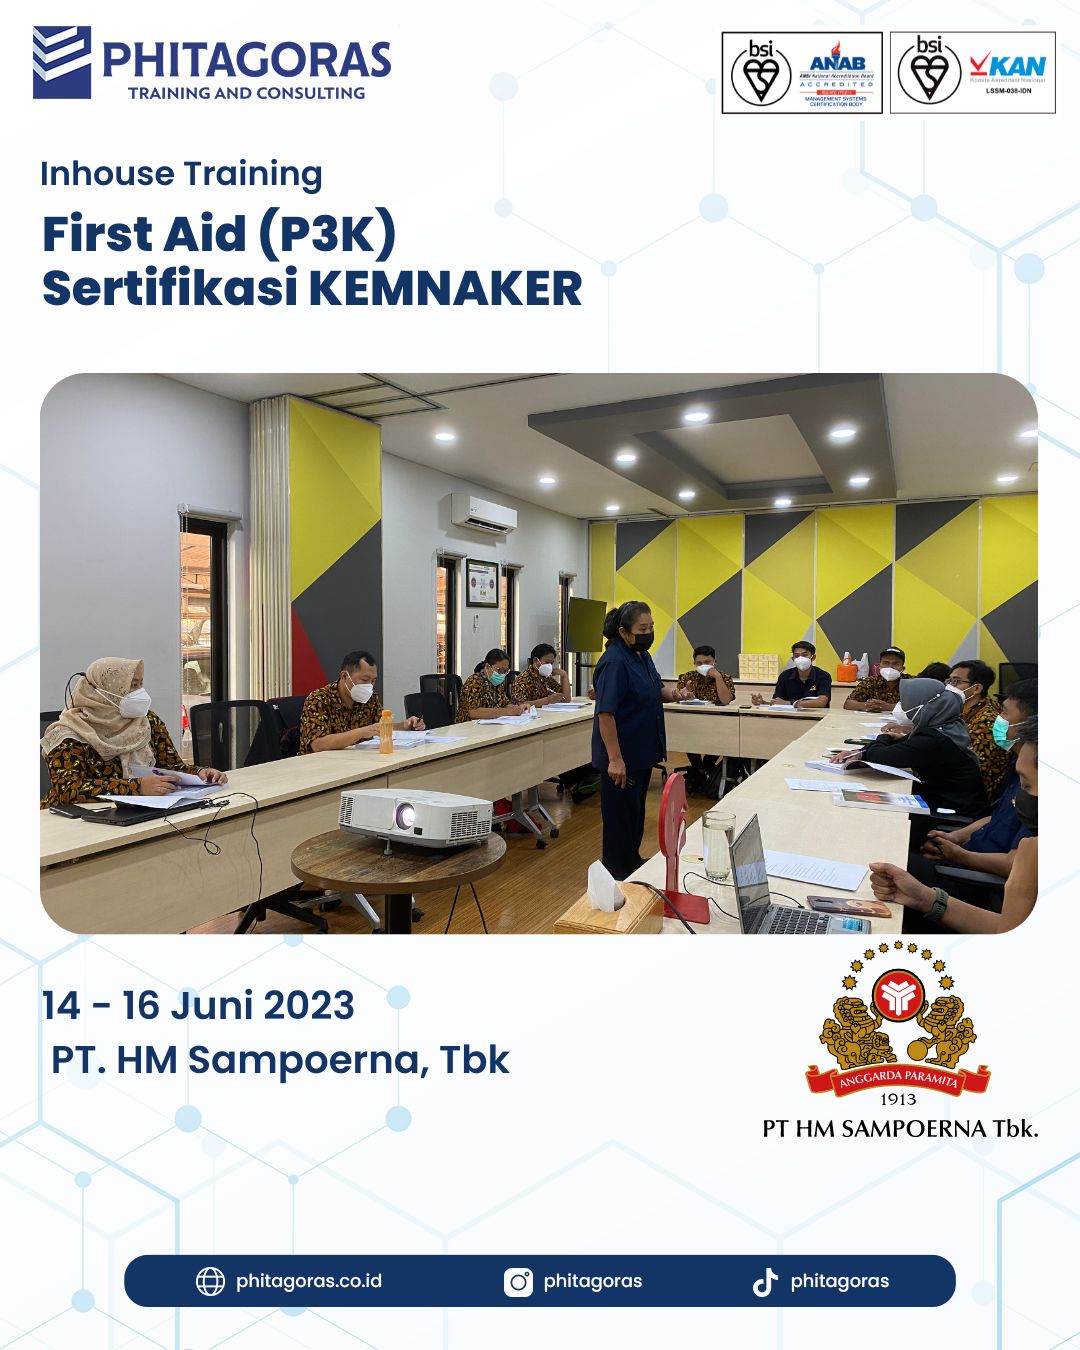 Inhouse Training First Aid (P3K) Sertifikasi KEMNAKER - PT. HM Sampoerna, Tbk